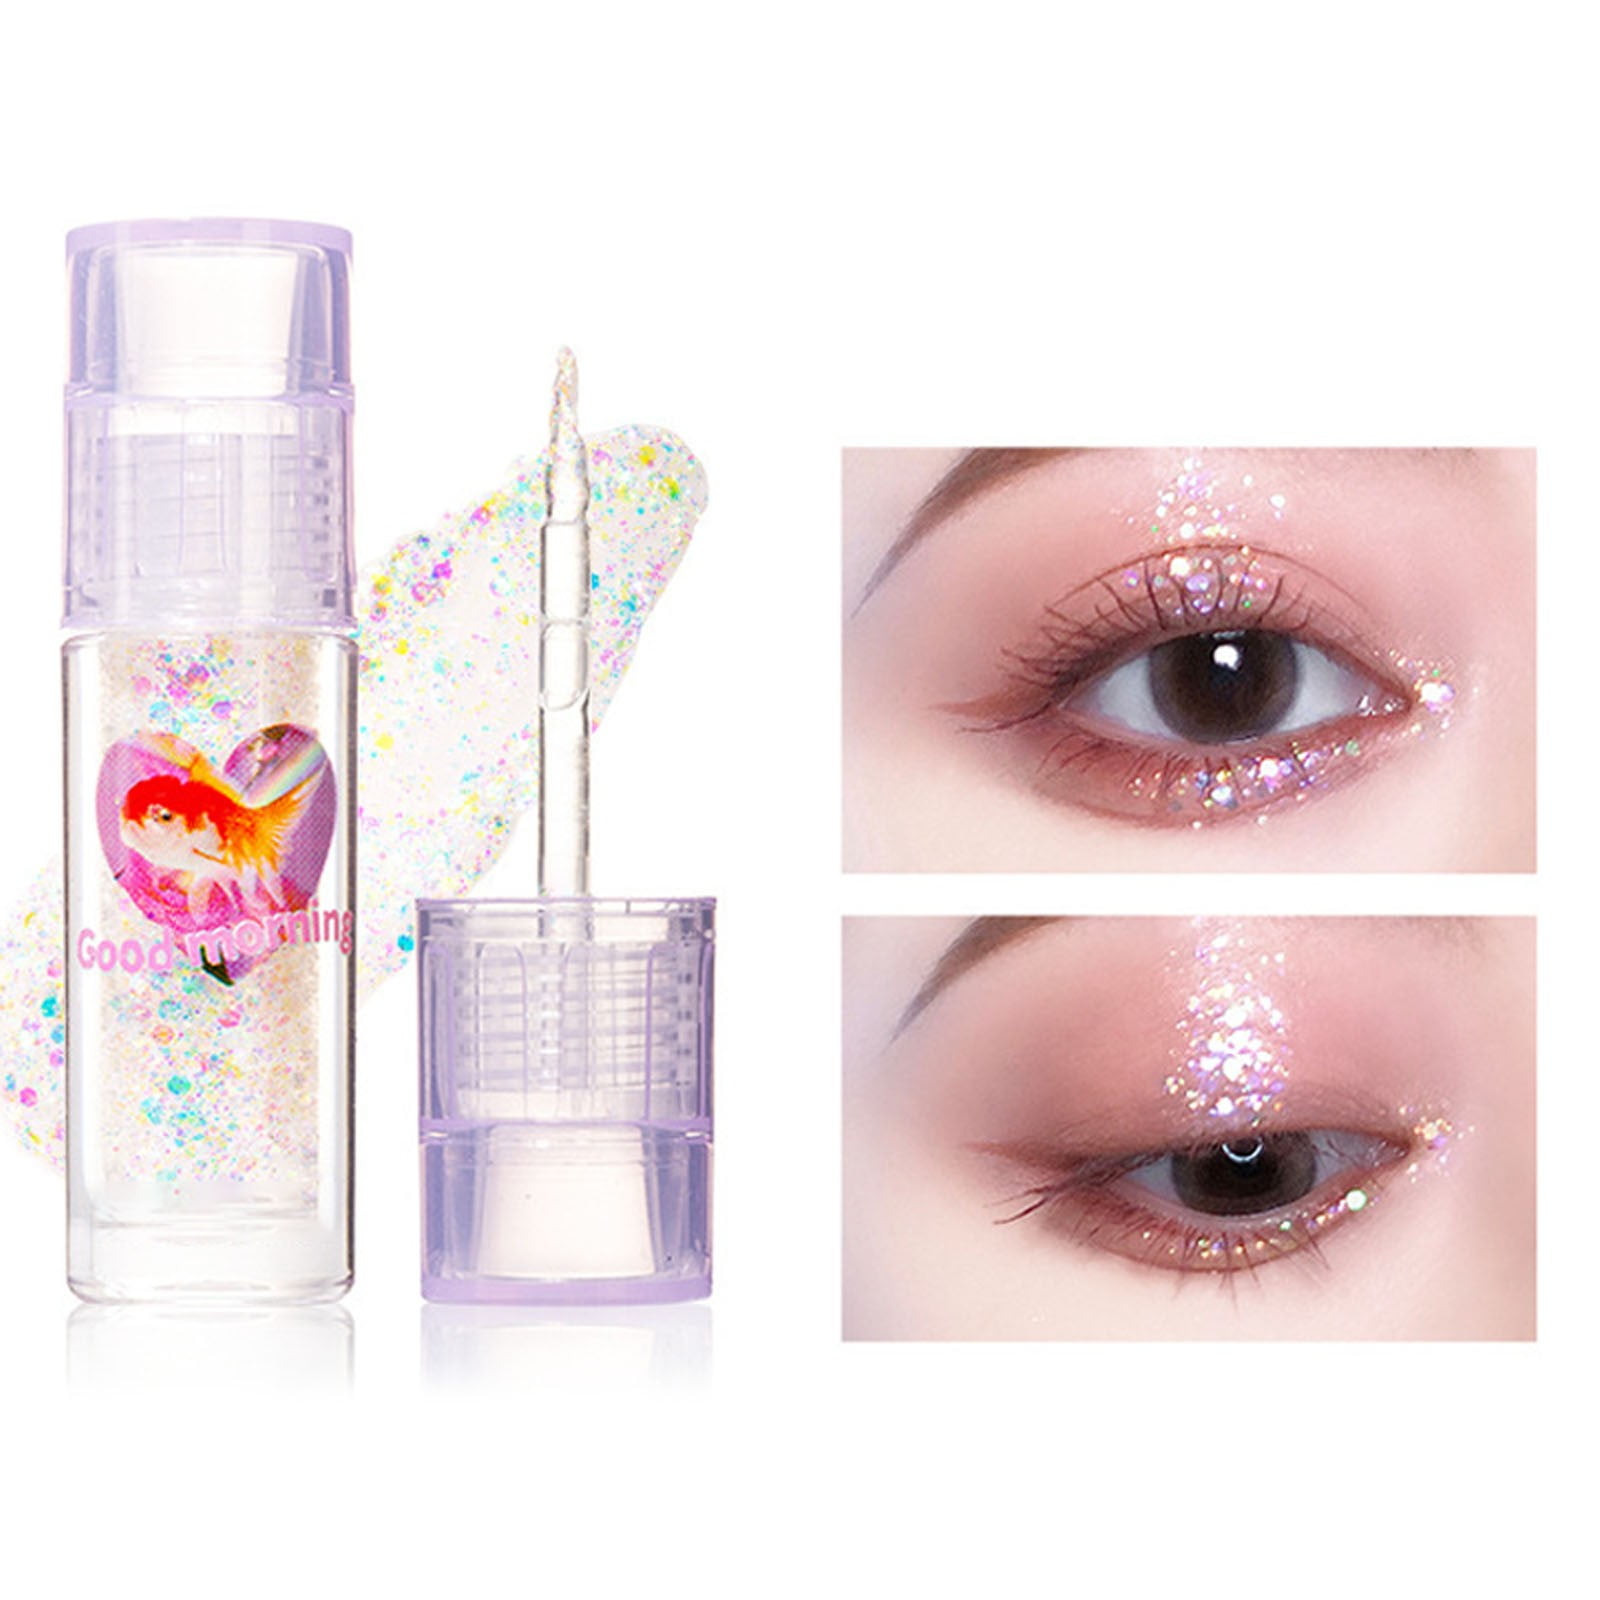 NIUREDLTD Korean Makeup Star Diamond Streamer Liquid Eyeshadow Bling  Pigmented Eye Makeup Sparkling Korean Eye Glitter Easy To Apply Liquid  Glitter